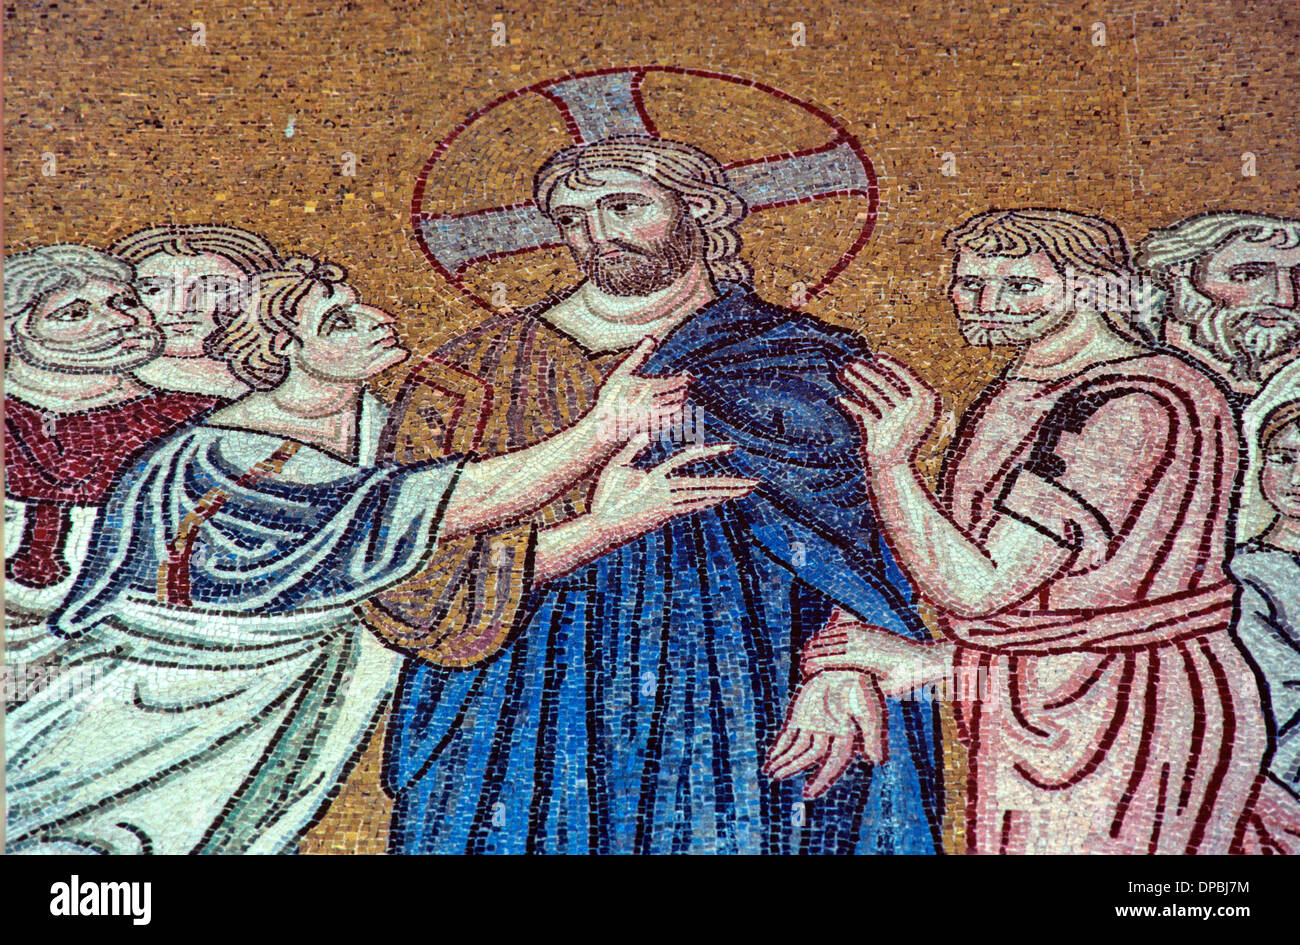 Verrat des Judas Ischariot c 11 byzantinisches Mosaik Kloster Daphni Chaidari Athen Griechenland Stockfoto